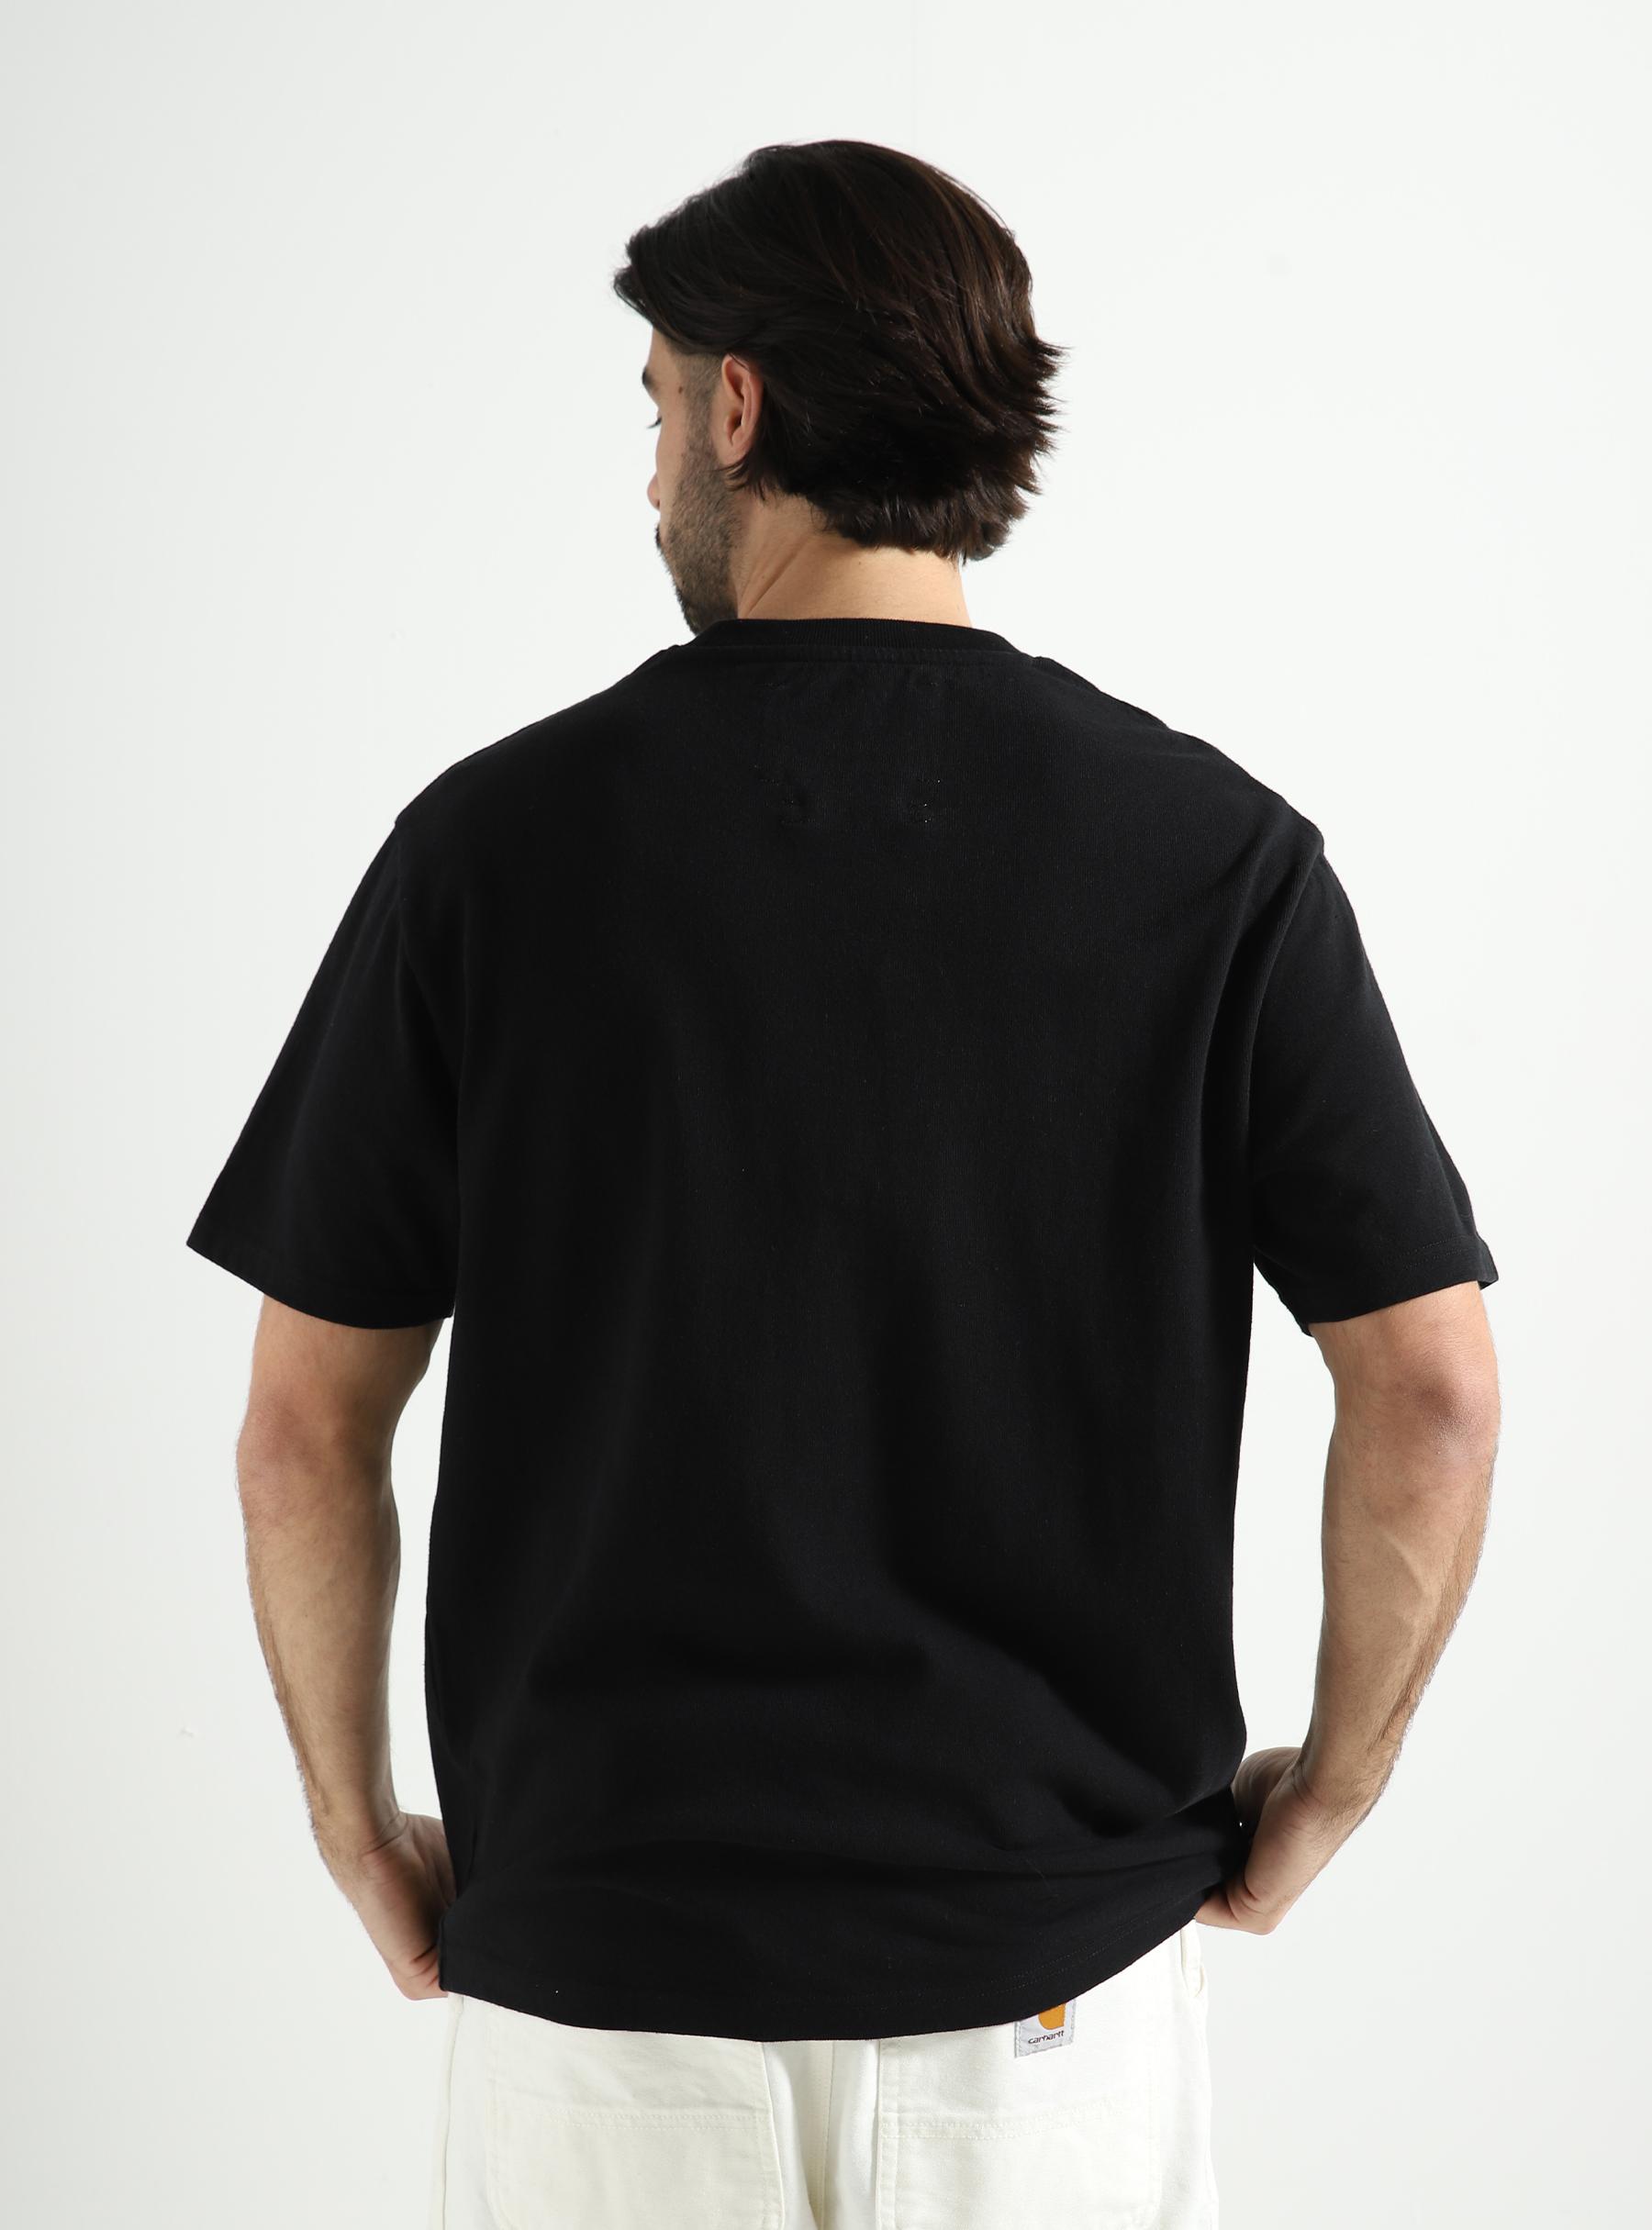 Beagle Aquarel T-shirt Black 157